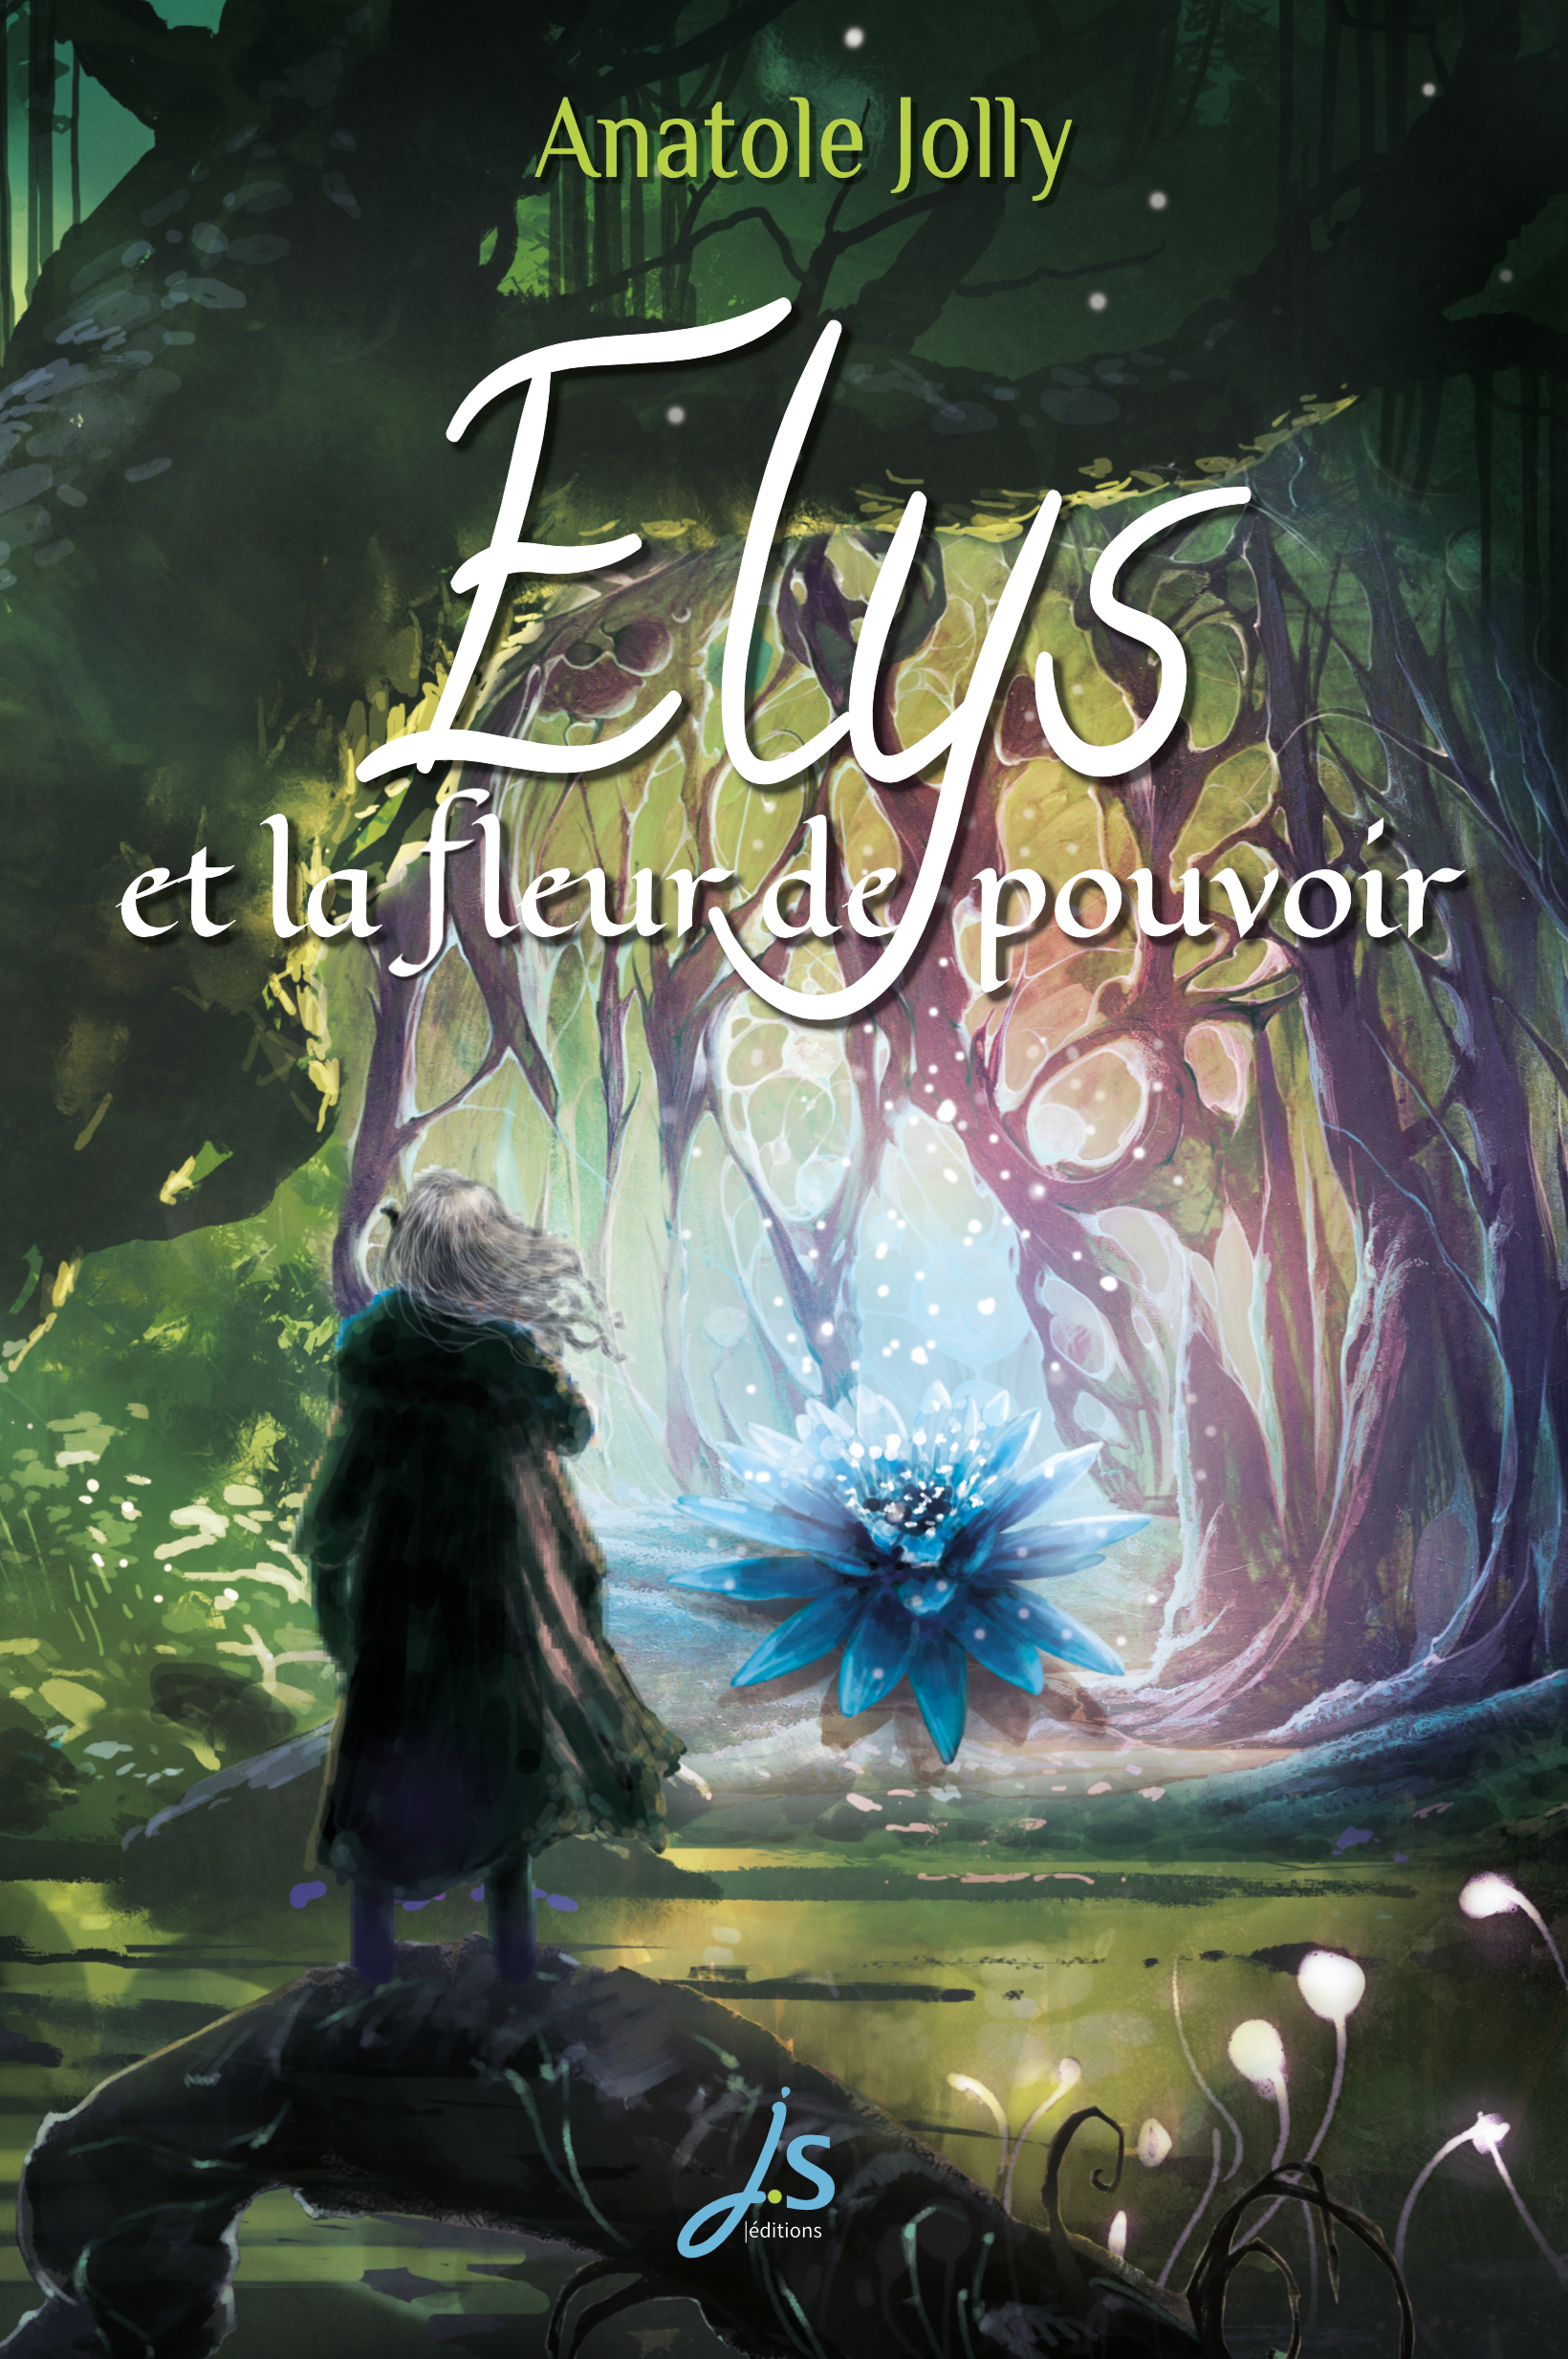 La couverture montre un personnage aux longs cheveux blancs qui se tient de dos dans une forêt sombre. Il observe une fleur gérante bleue.